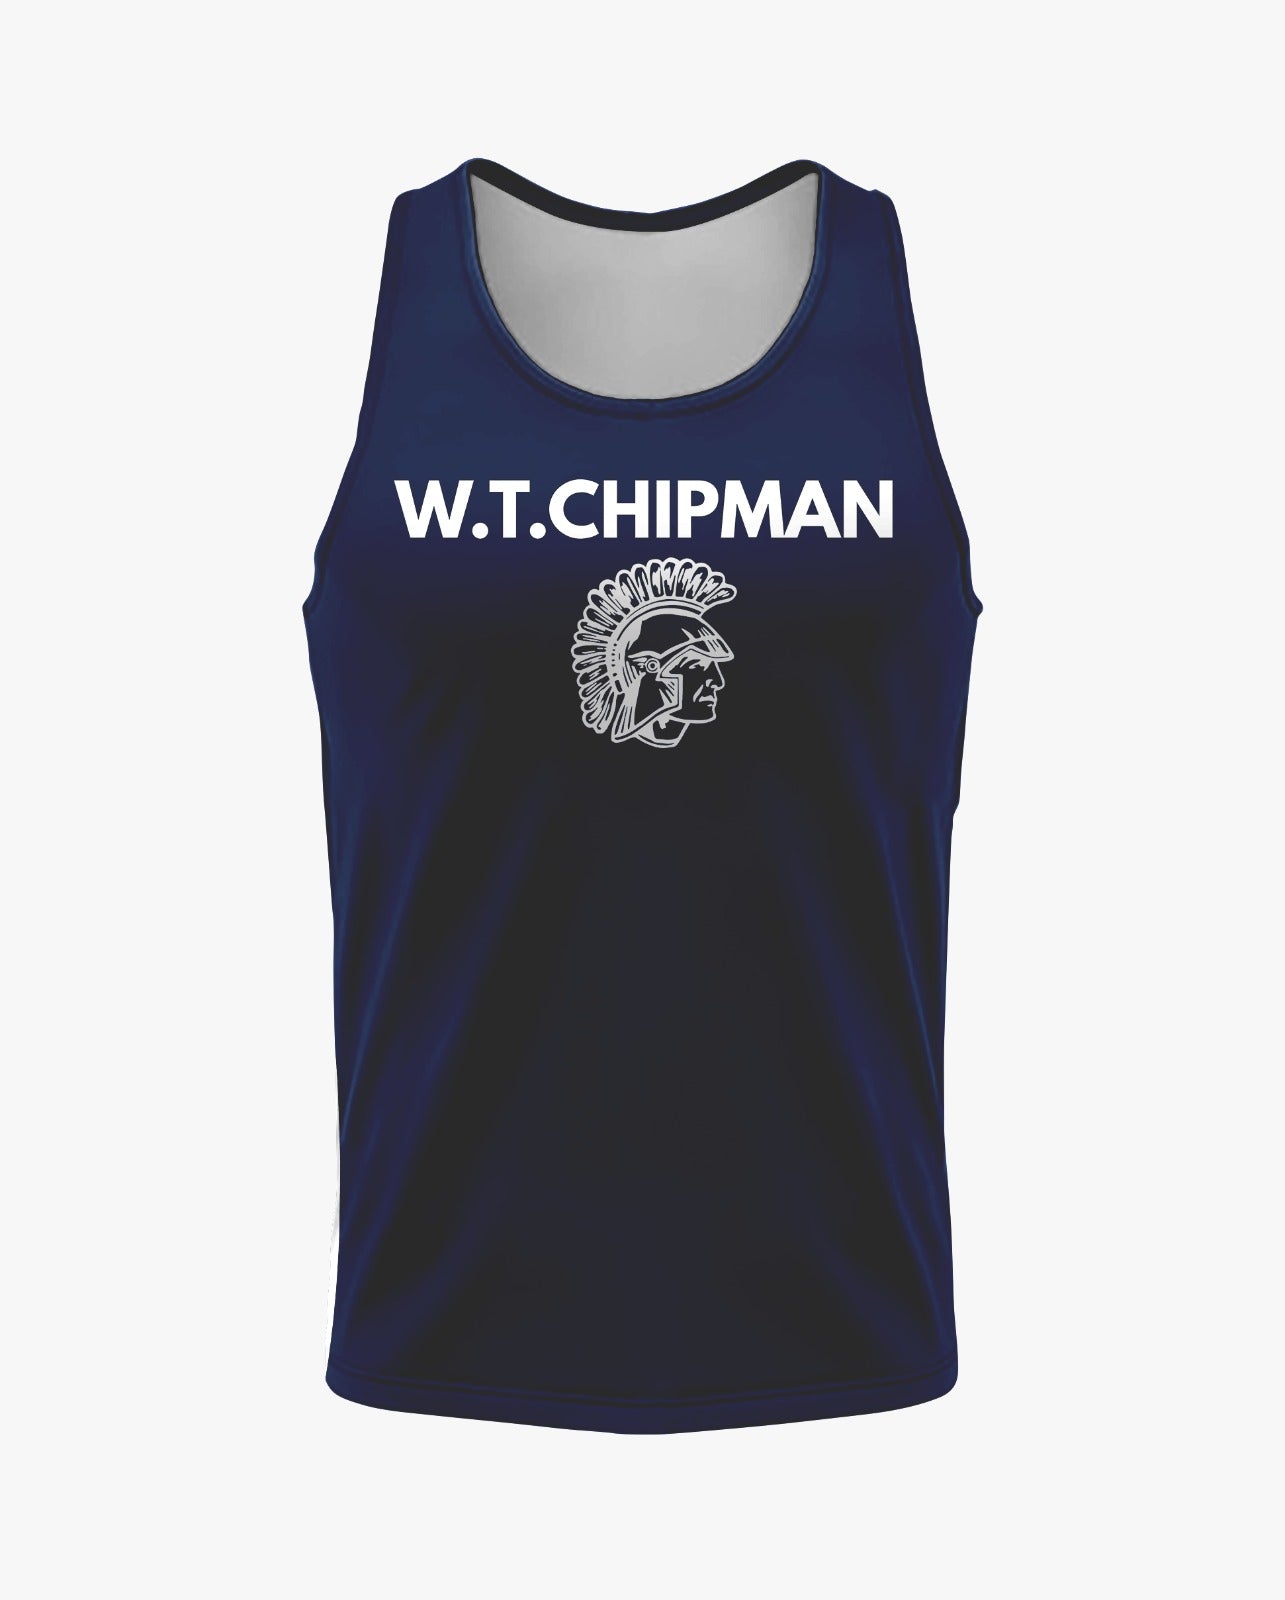 W.T. Chipman Dri Tech Tank Top ~ Navy Chipman Spartan